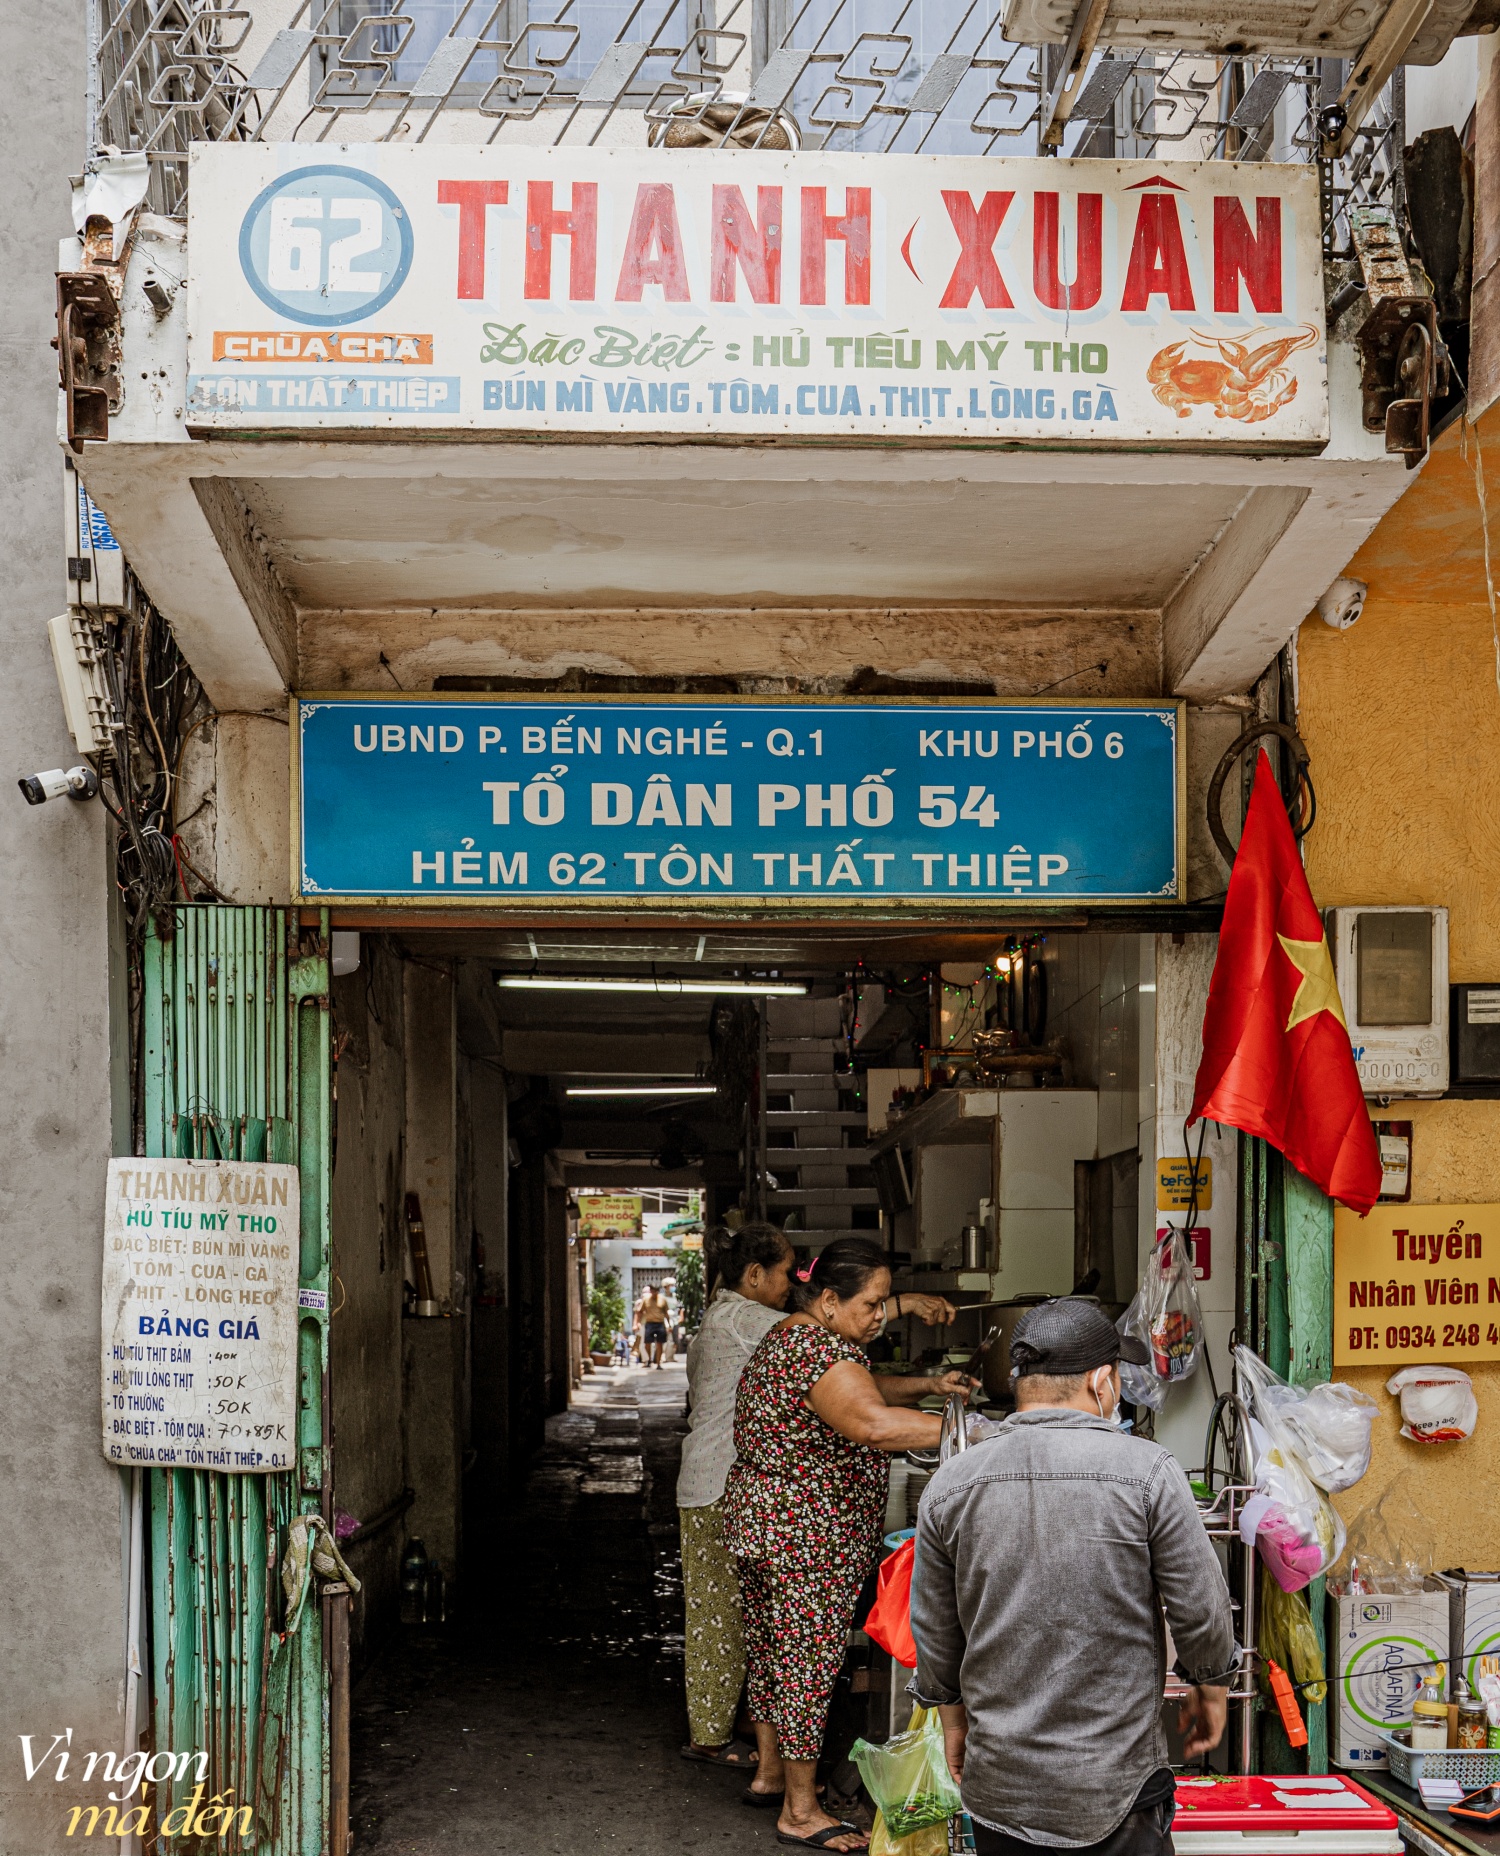 Hủ tiếu Thanh Xuân gần 80 năm tuổi ngay giữa trung tâm Sài Gòn, nổi tiếng là thế nhưng vẫn gây tranh cãi bởi mức giá gần 100K/tô cho quán ăn vỉa hè - Ảnh 1.